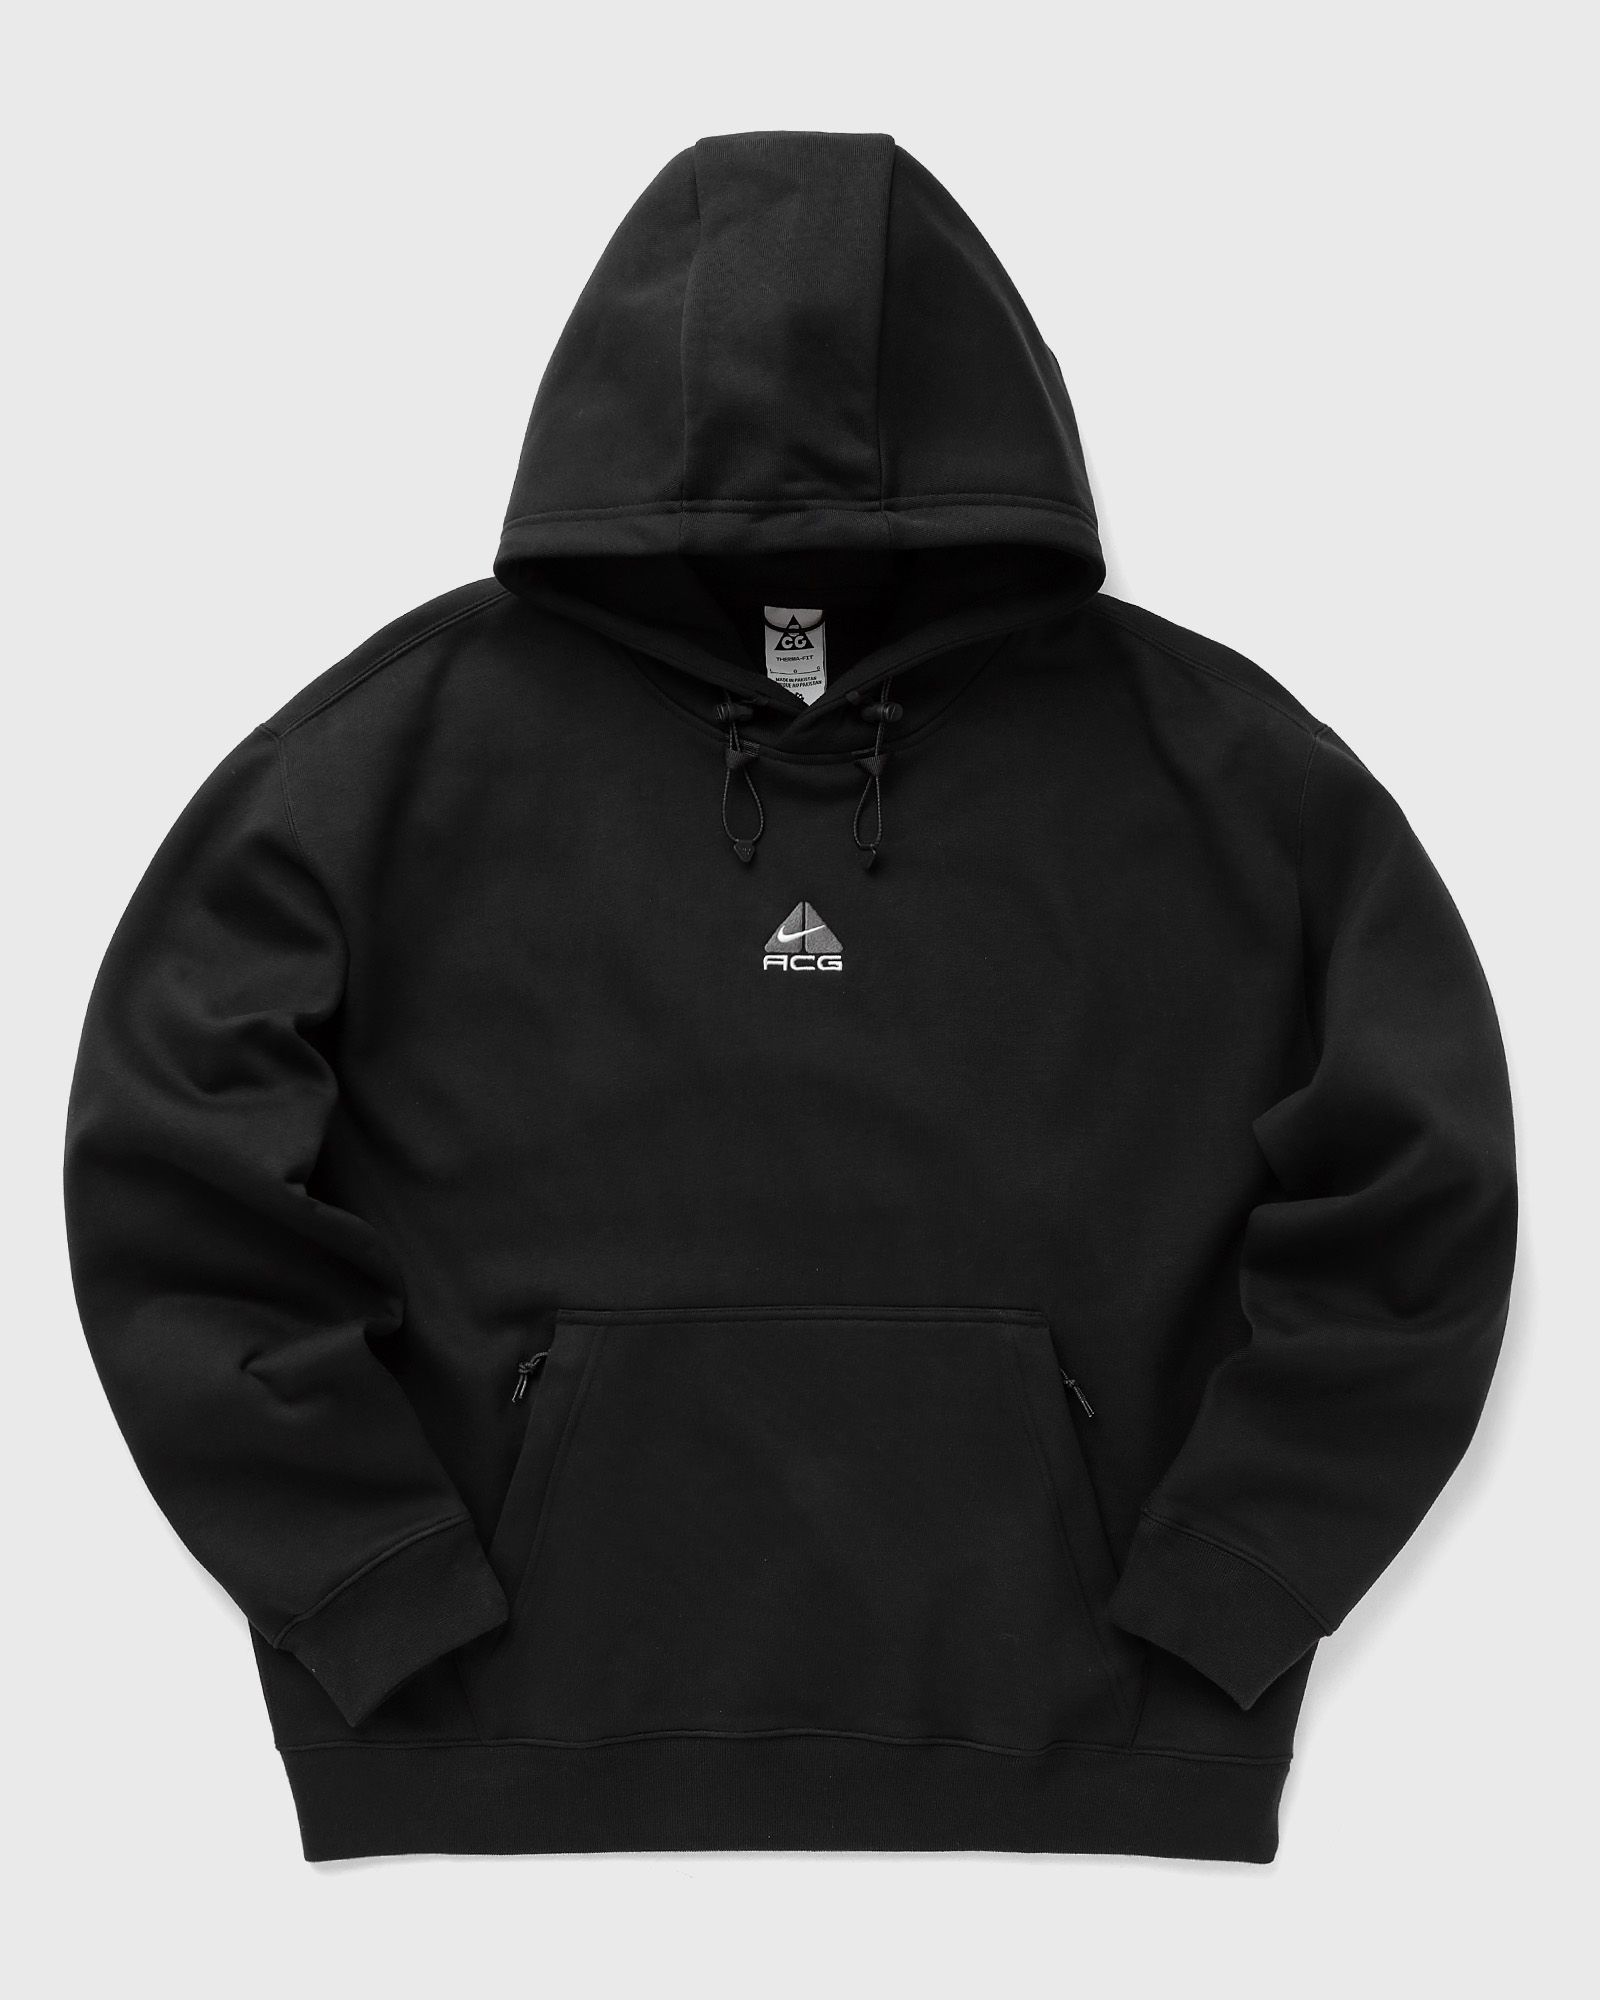 Nike - acg therma-fit fleece pullover hoodie men hoodies black in größe:xl